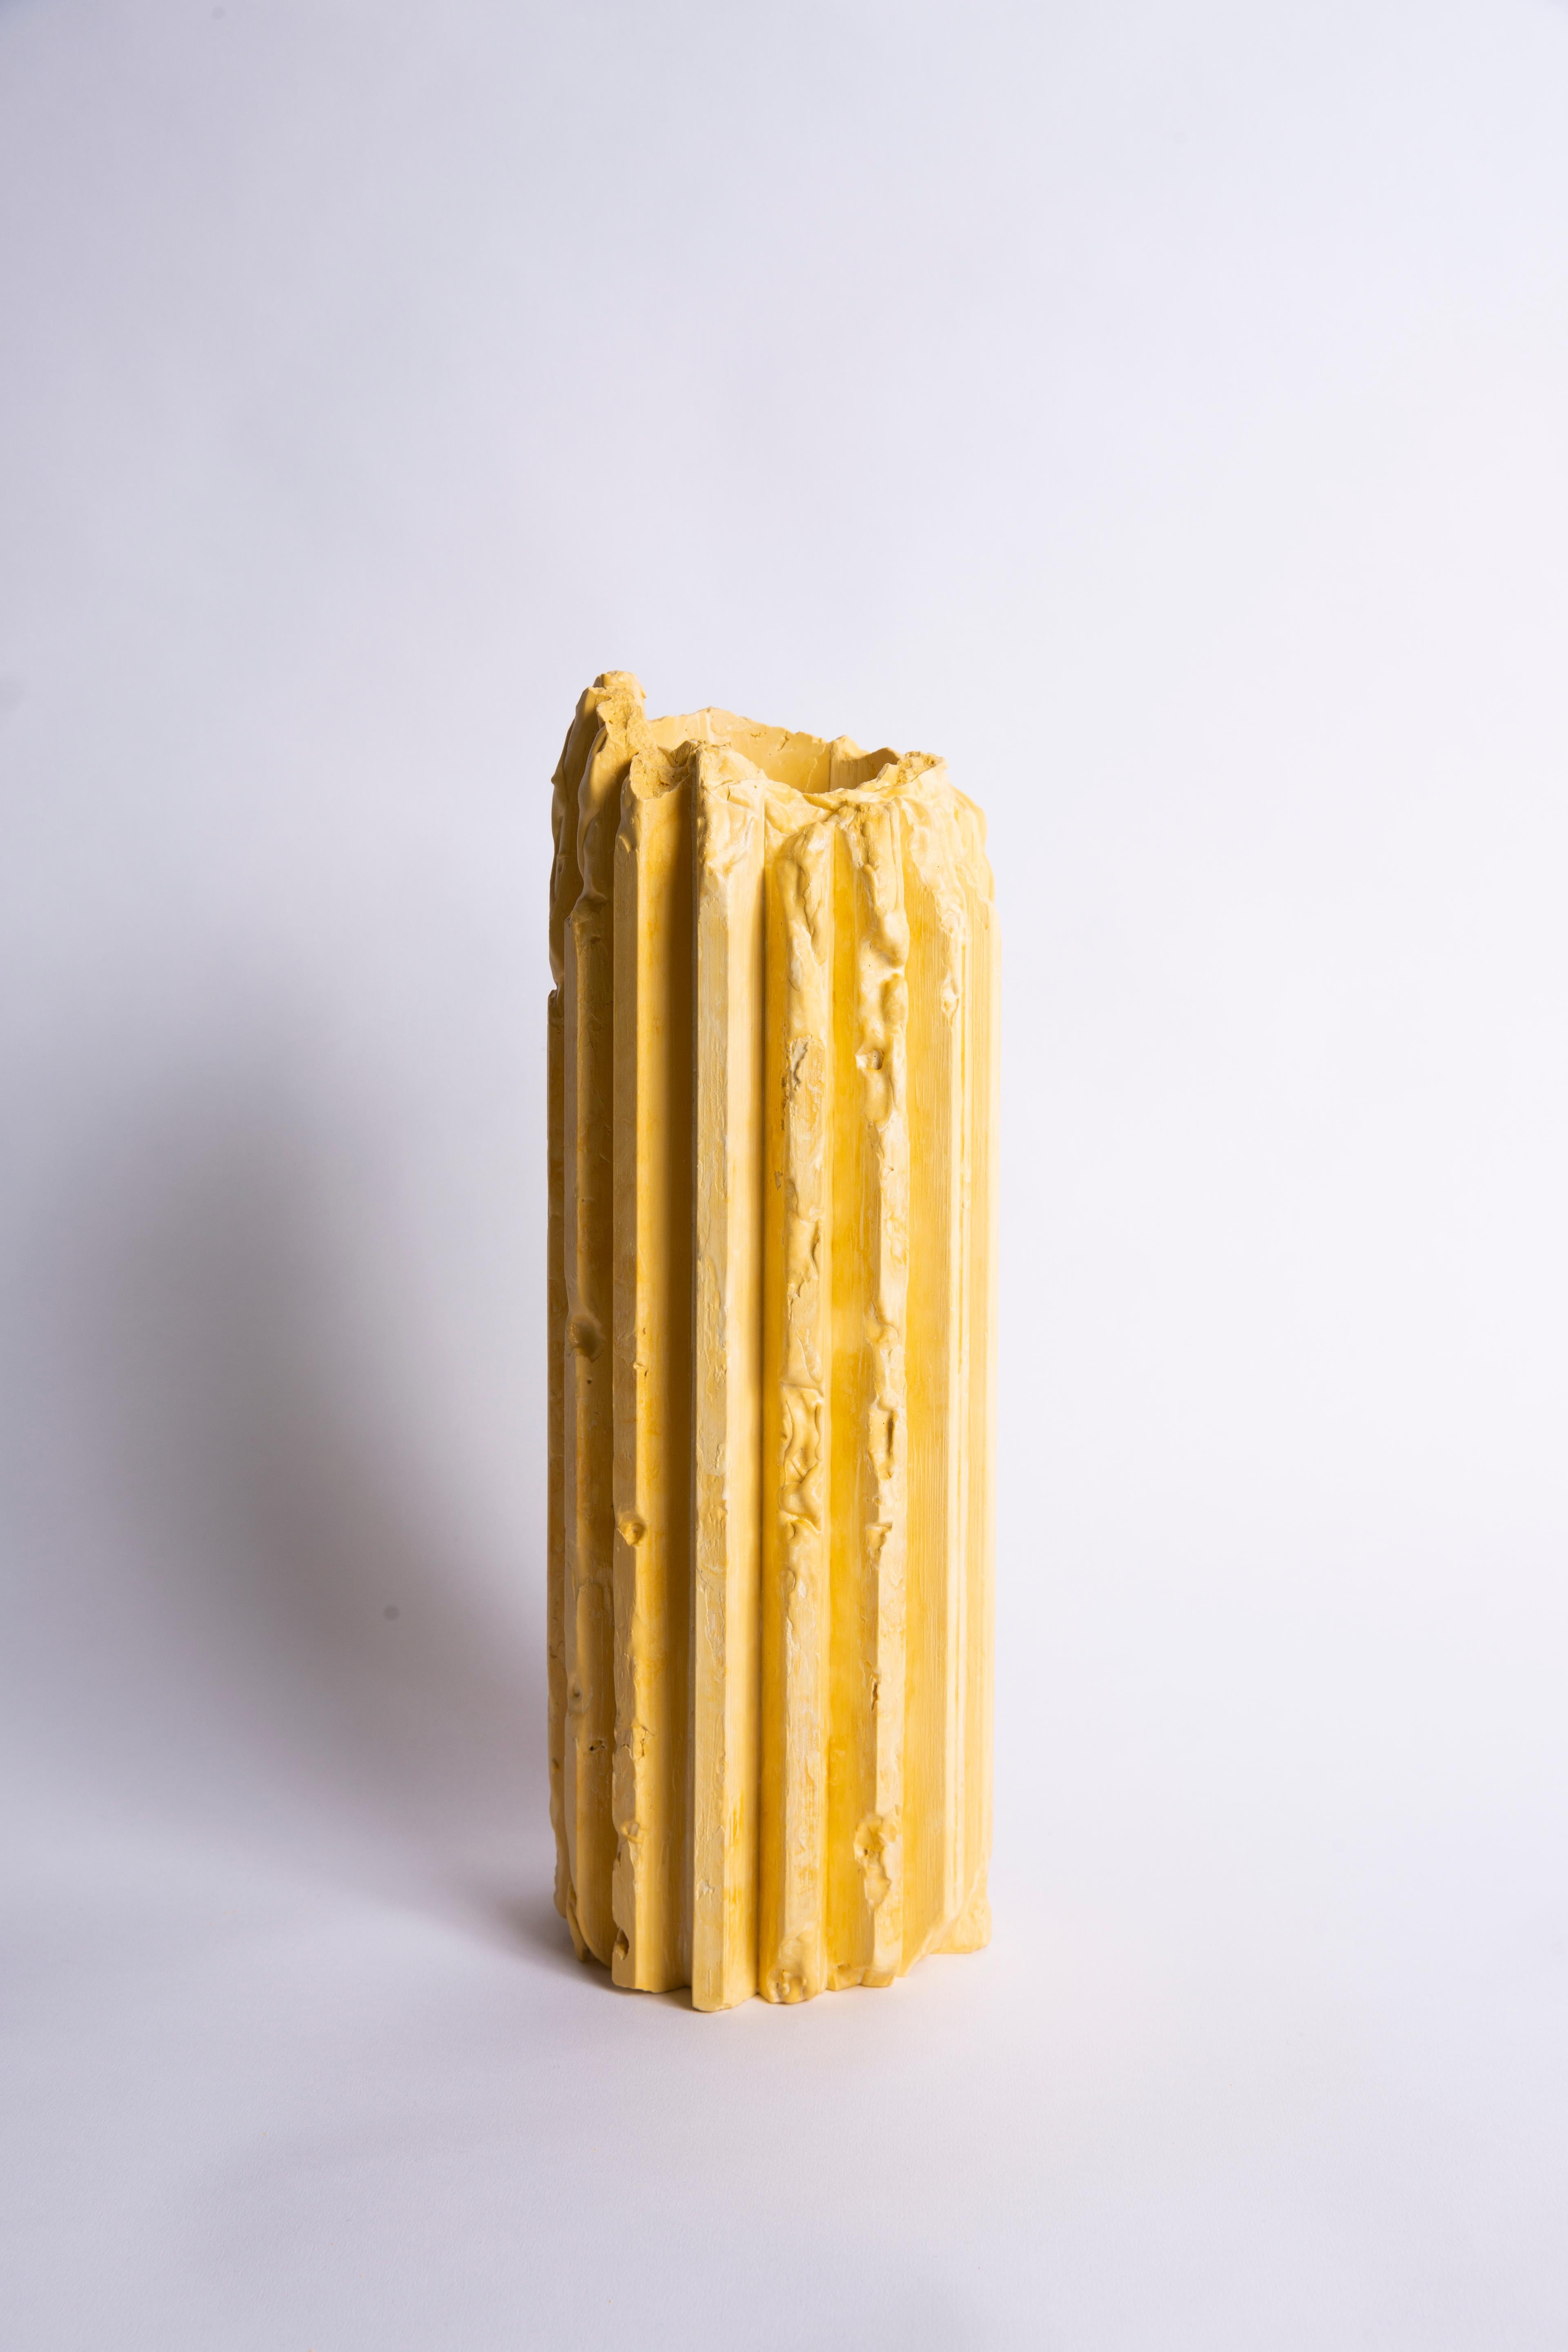 Set of 3 Yellow Cornice Vessel by Lenny Stöpp For Sale 6